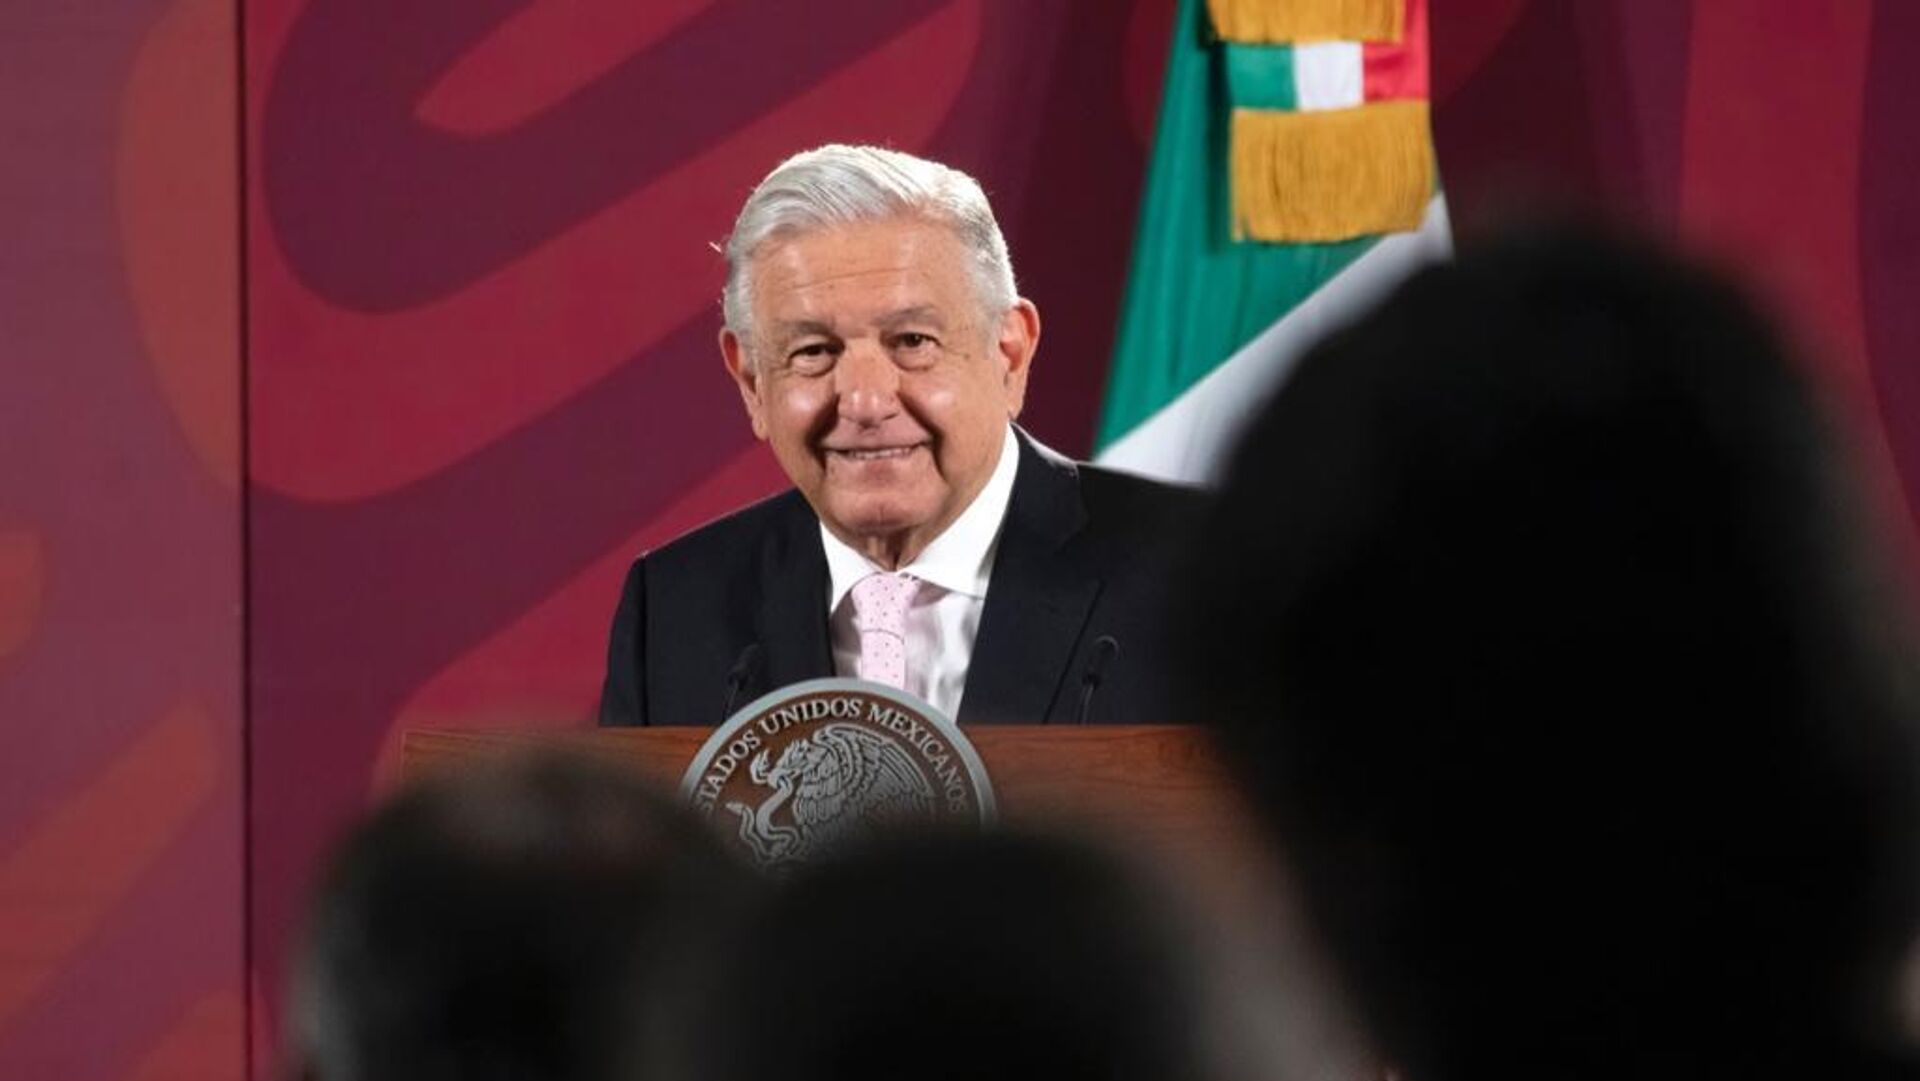 Andrés Manuel López Obrador, presidente de México - Sputnik Mundo, 1920, 14.07.2022